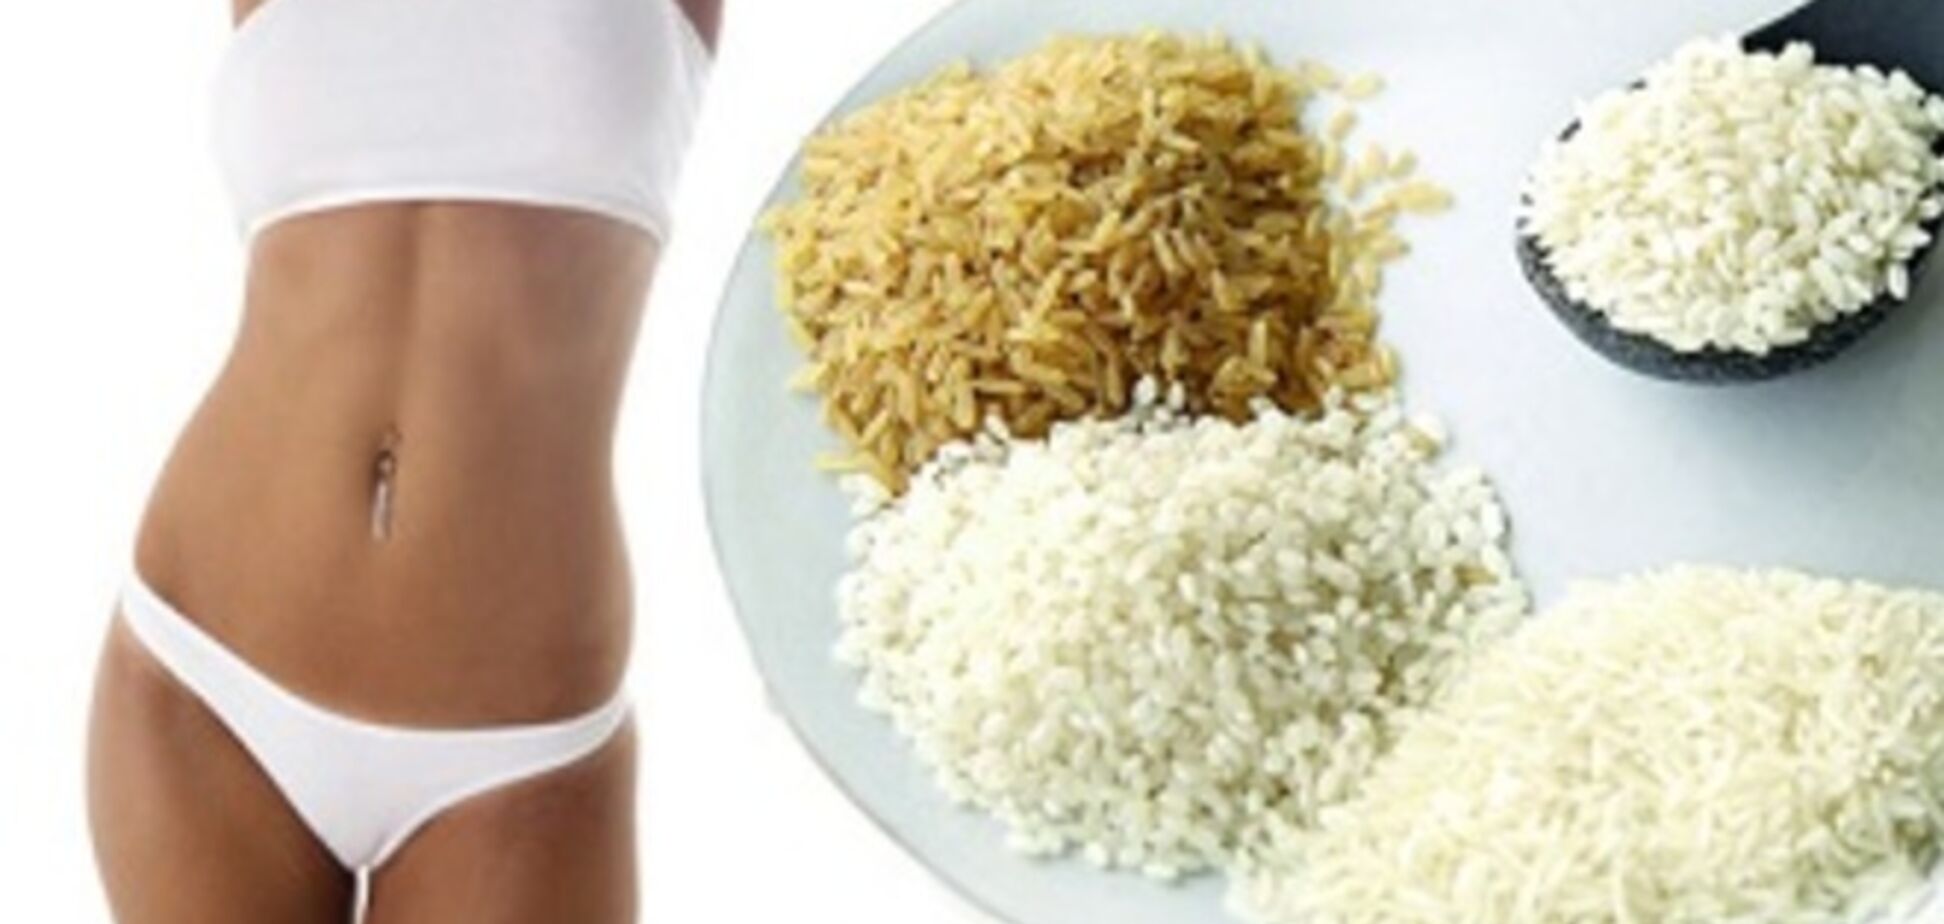 Рисовая диета для похудения и очищения организма